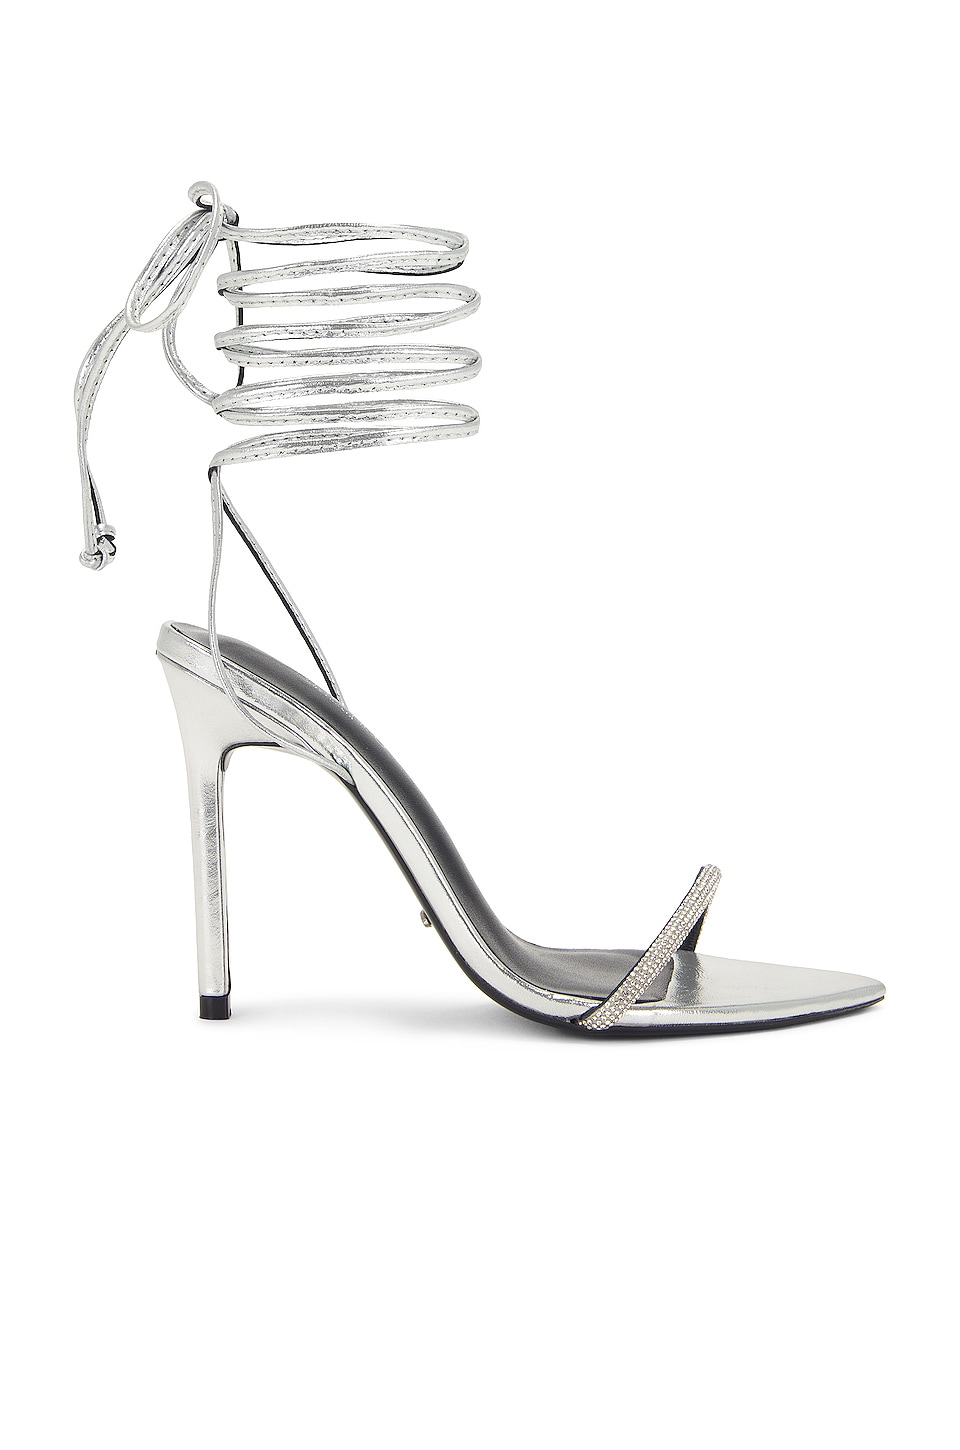 Tony Bianco Makai Sandal in Silver Foil | REVOLVE